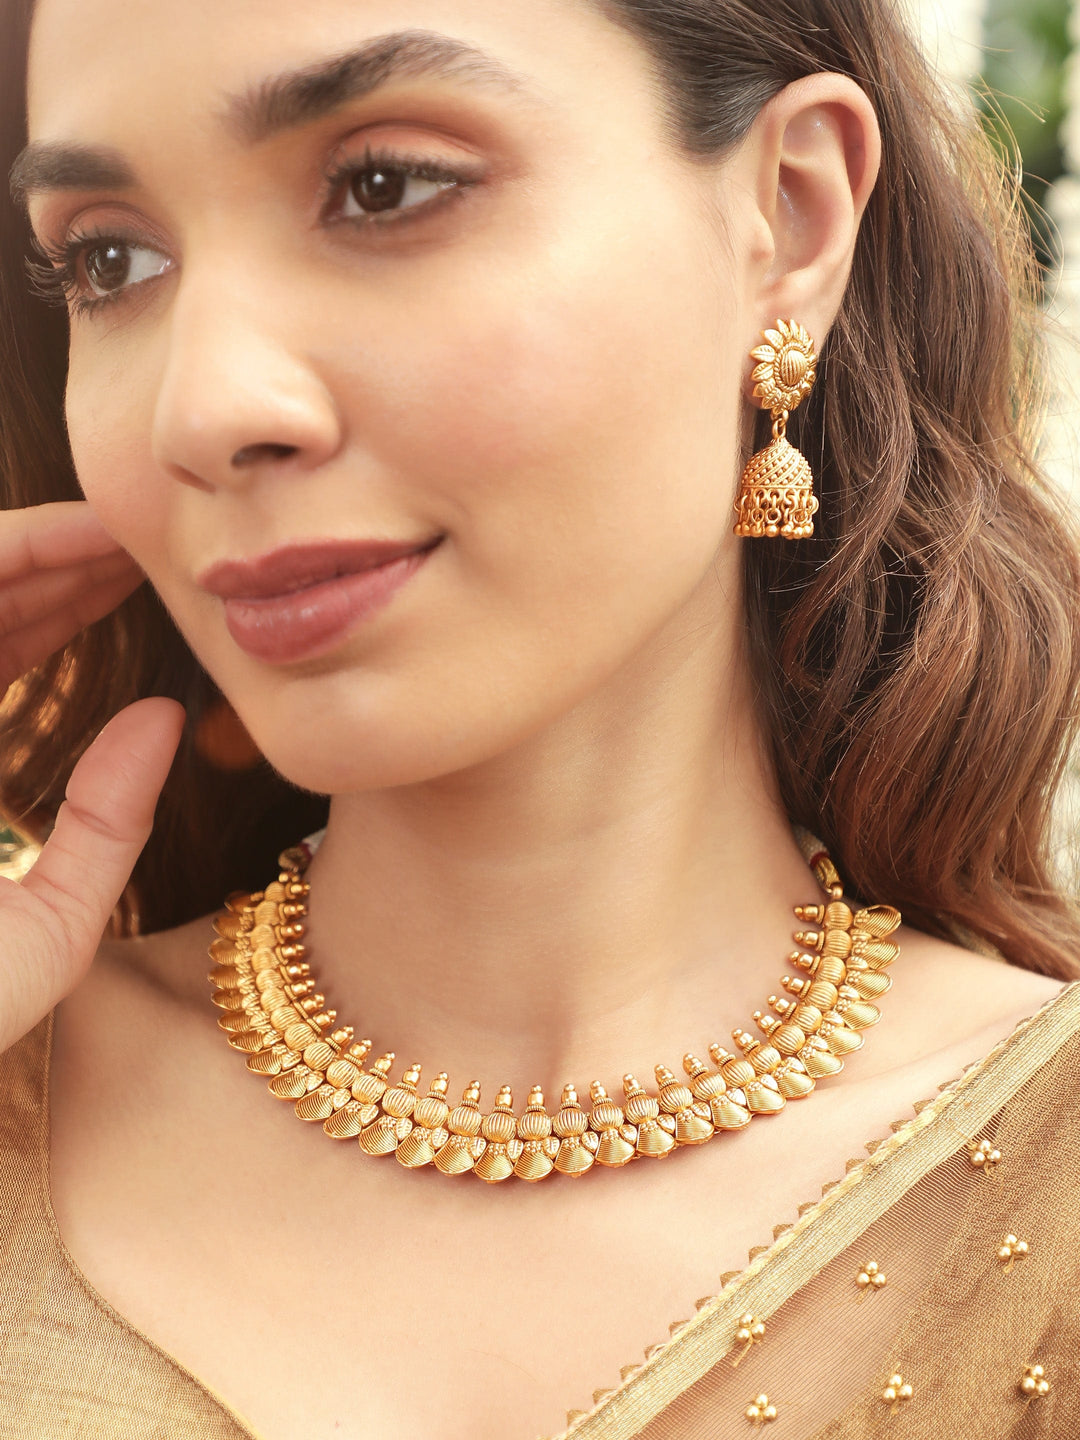 Rubans Women's Golden Petals Luxurious 22k Gold-Plated Floral Necklace Set necklace set